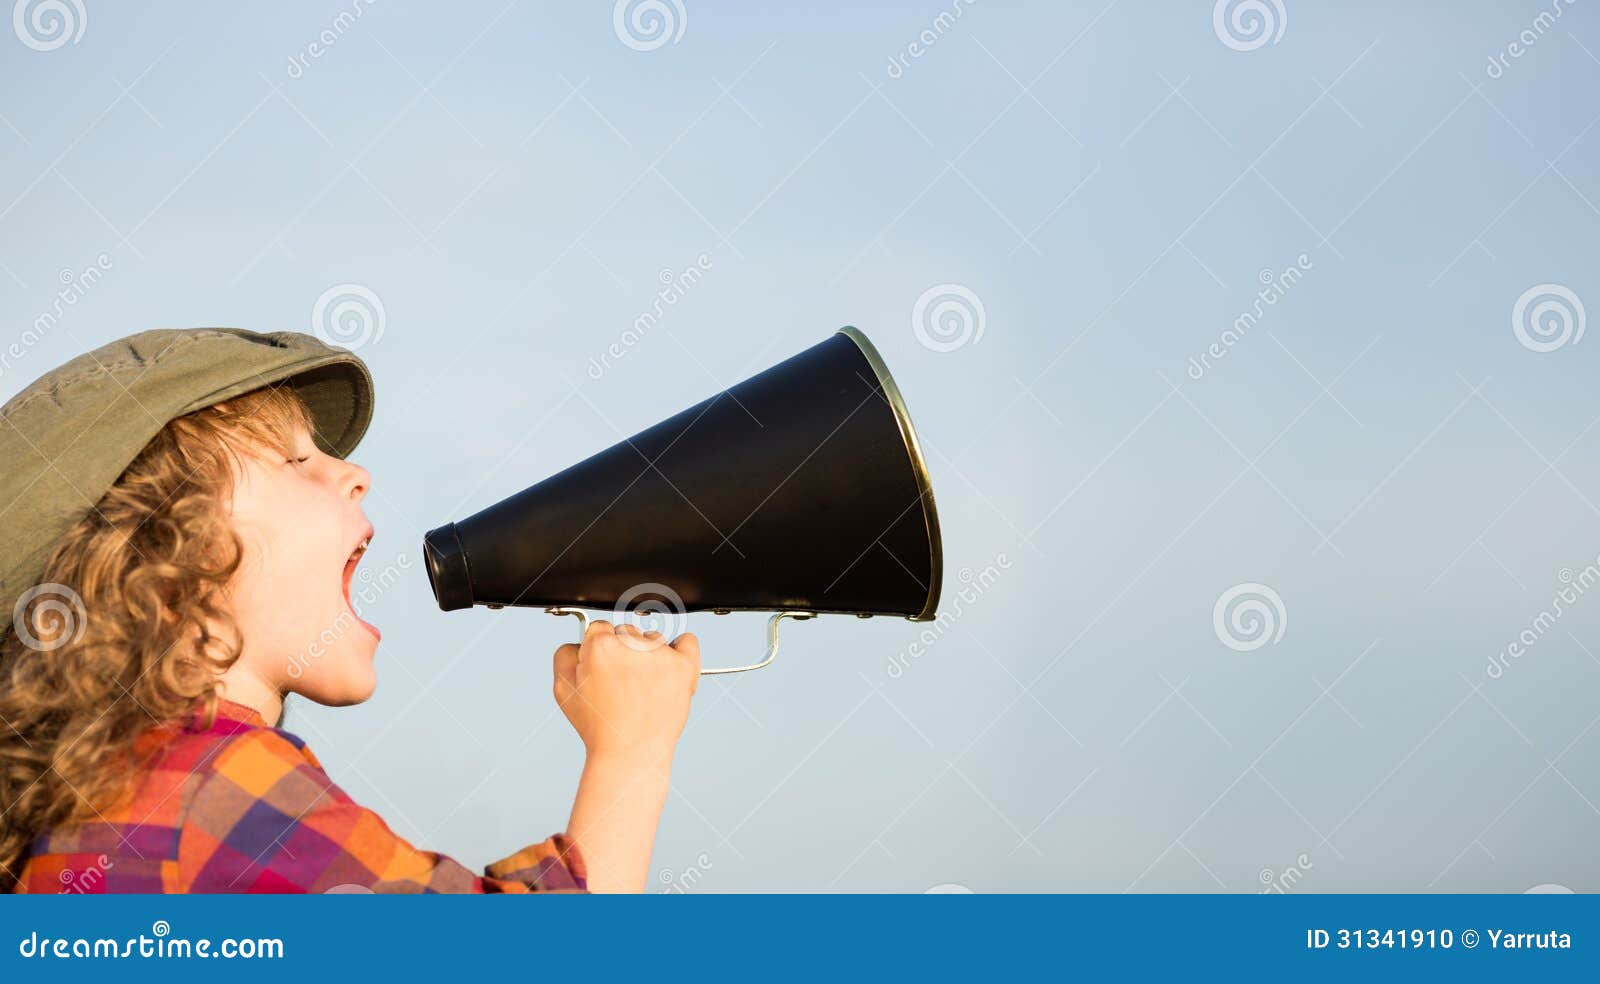 kid shouting through megaphone